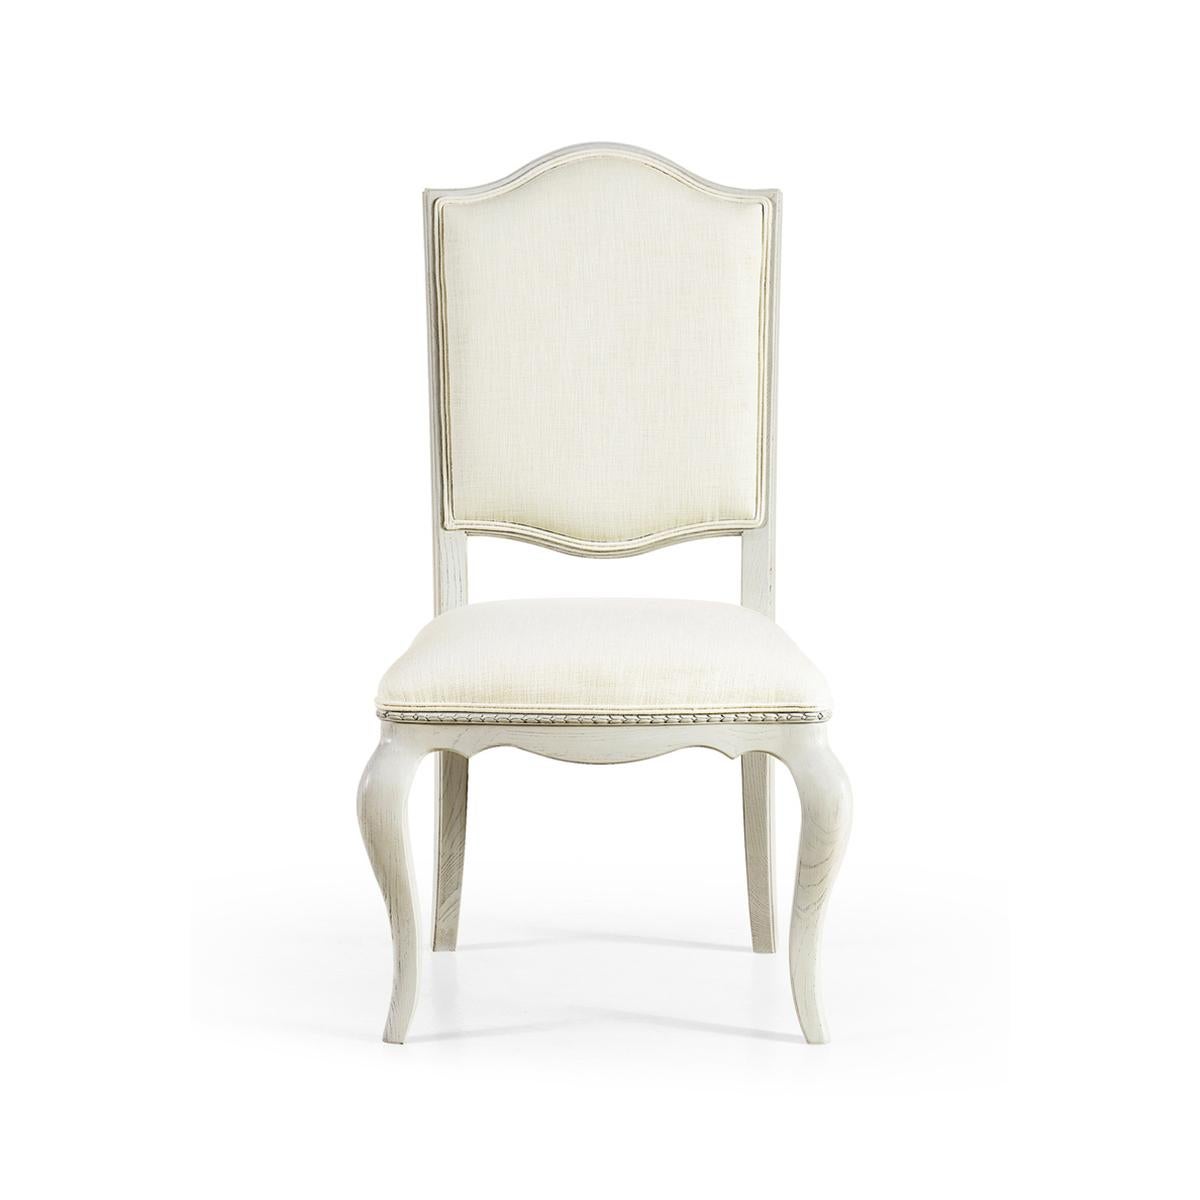 Chaise de salle à manger peinte française, chaise de salle à manger peinte de style Louis XV, cette chaise de salle à manger repose sur des pieds sabres légèrement inclinés, avec un dossier flottant incurvé et un détail en forme de cloche. Une